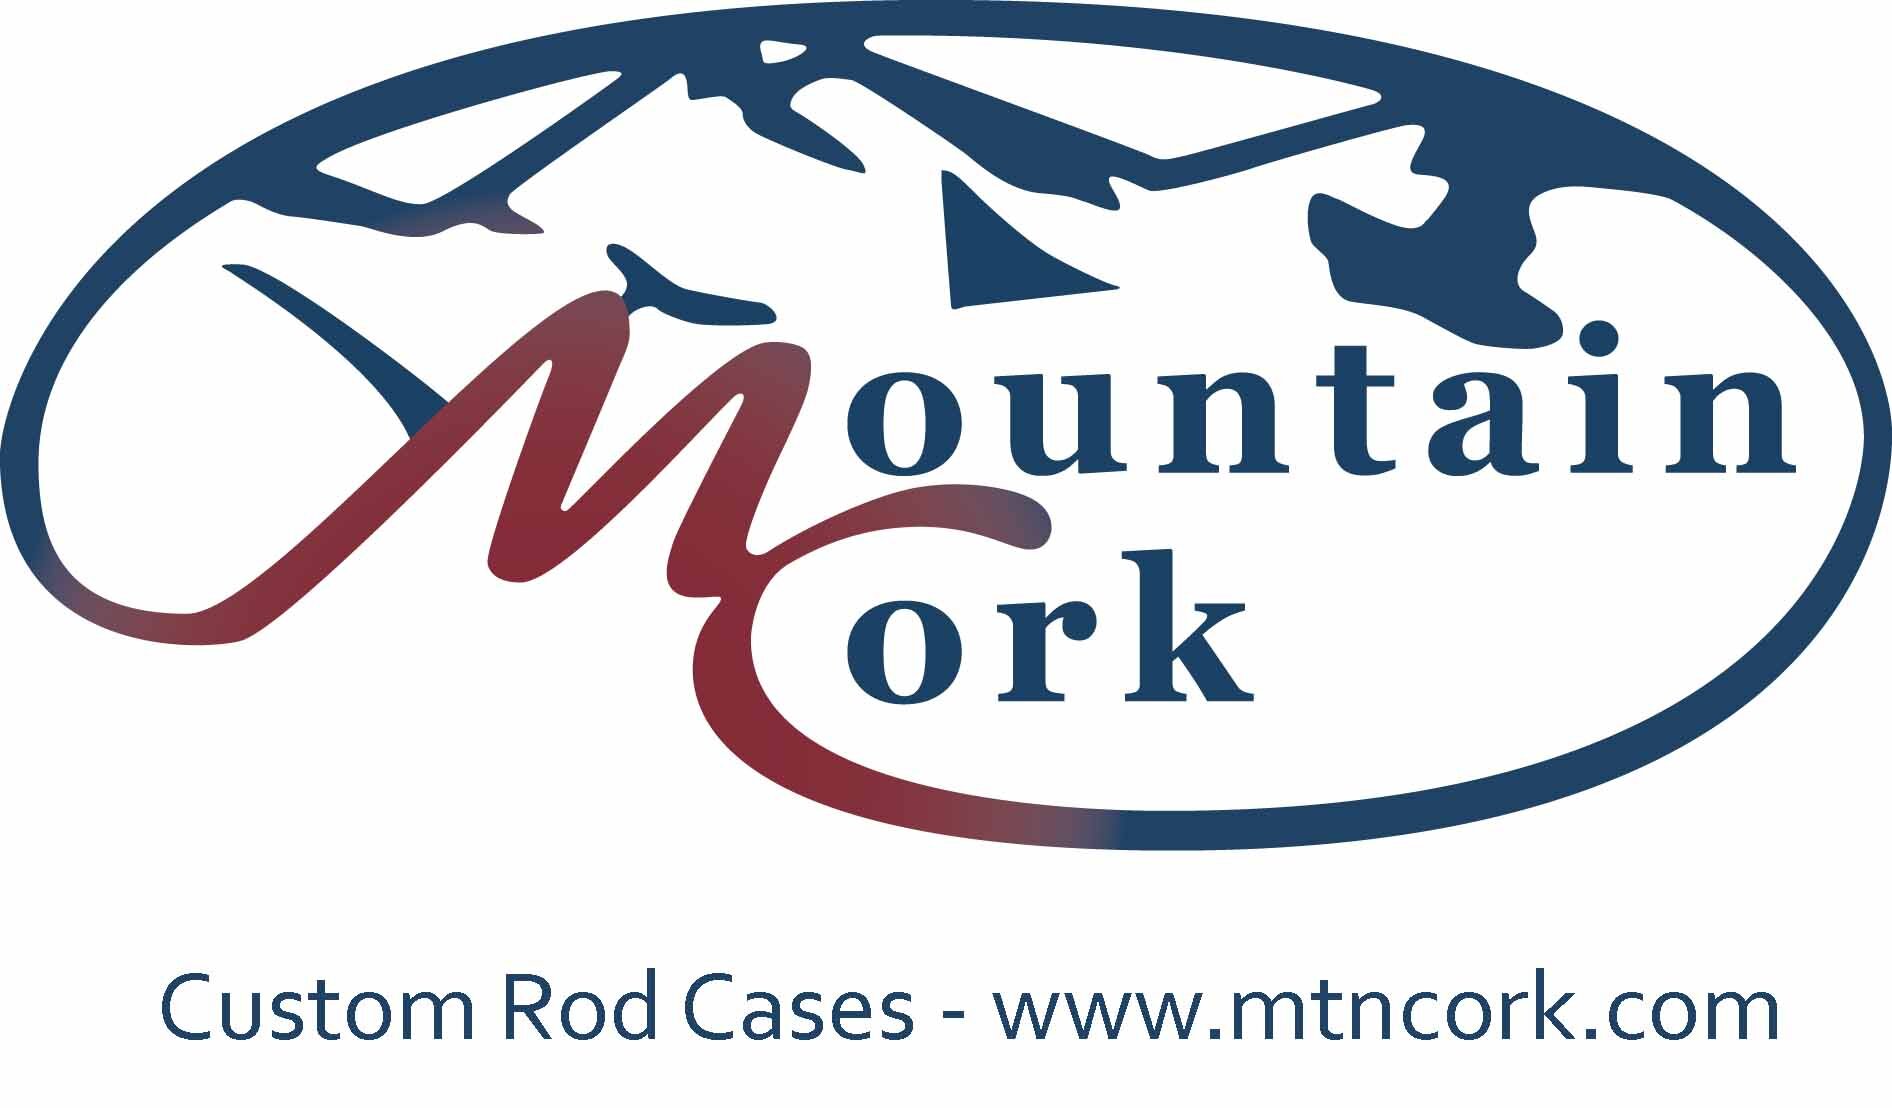 Mtn Cork logo - NFC.jpg